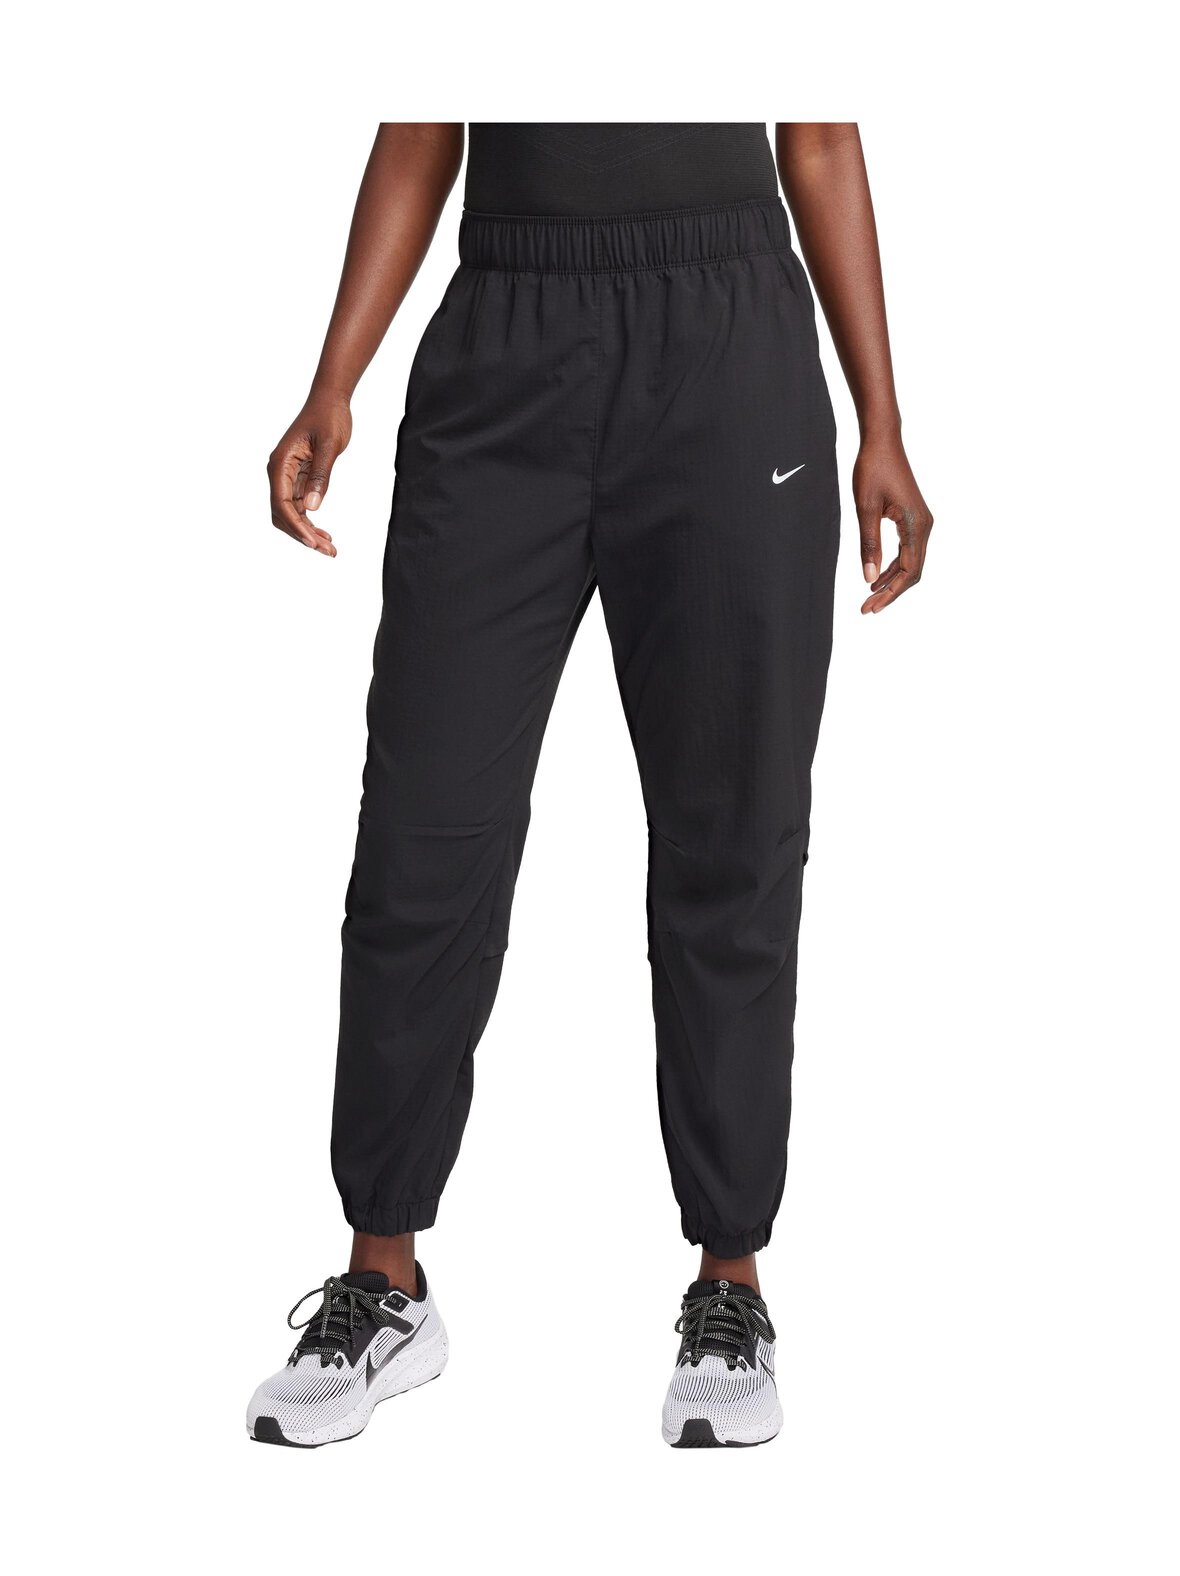 Nike Dri-fit fast warm mid rise 7/8 -juoksuhousut